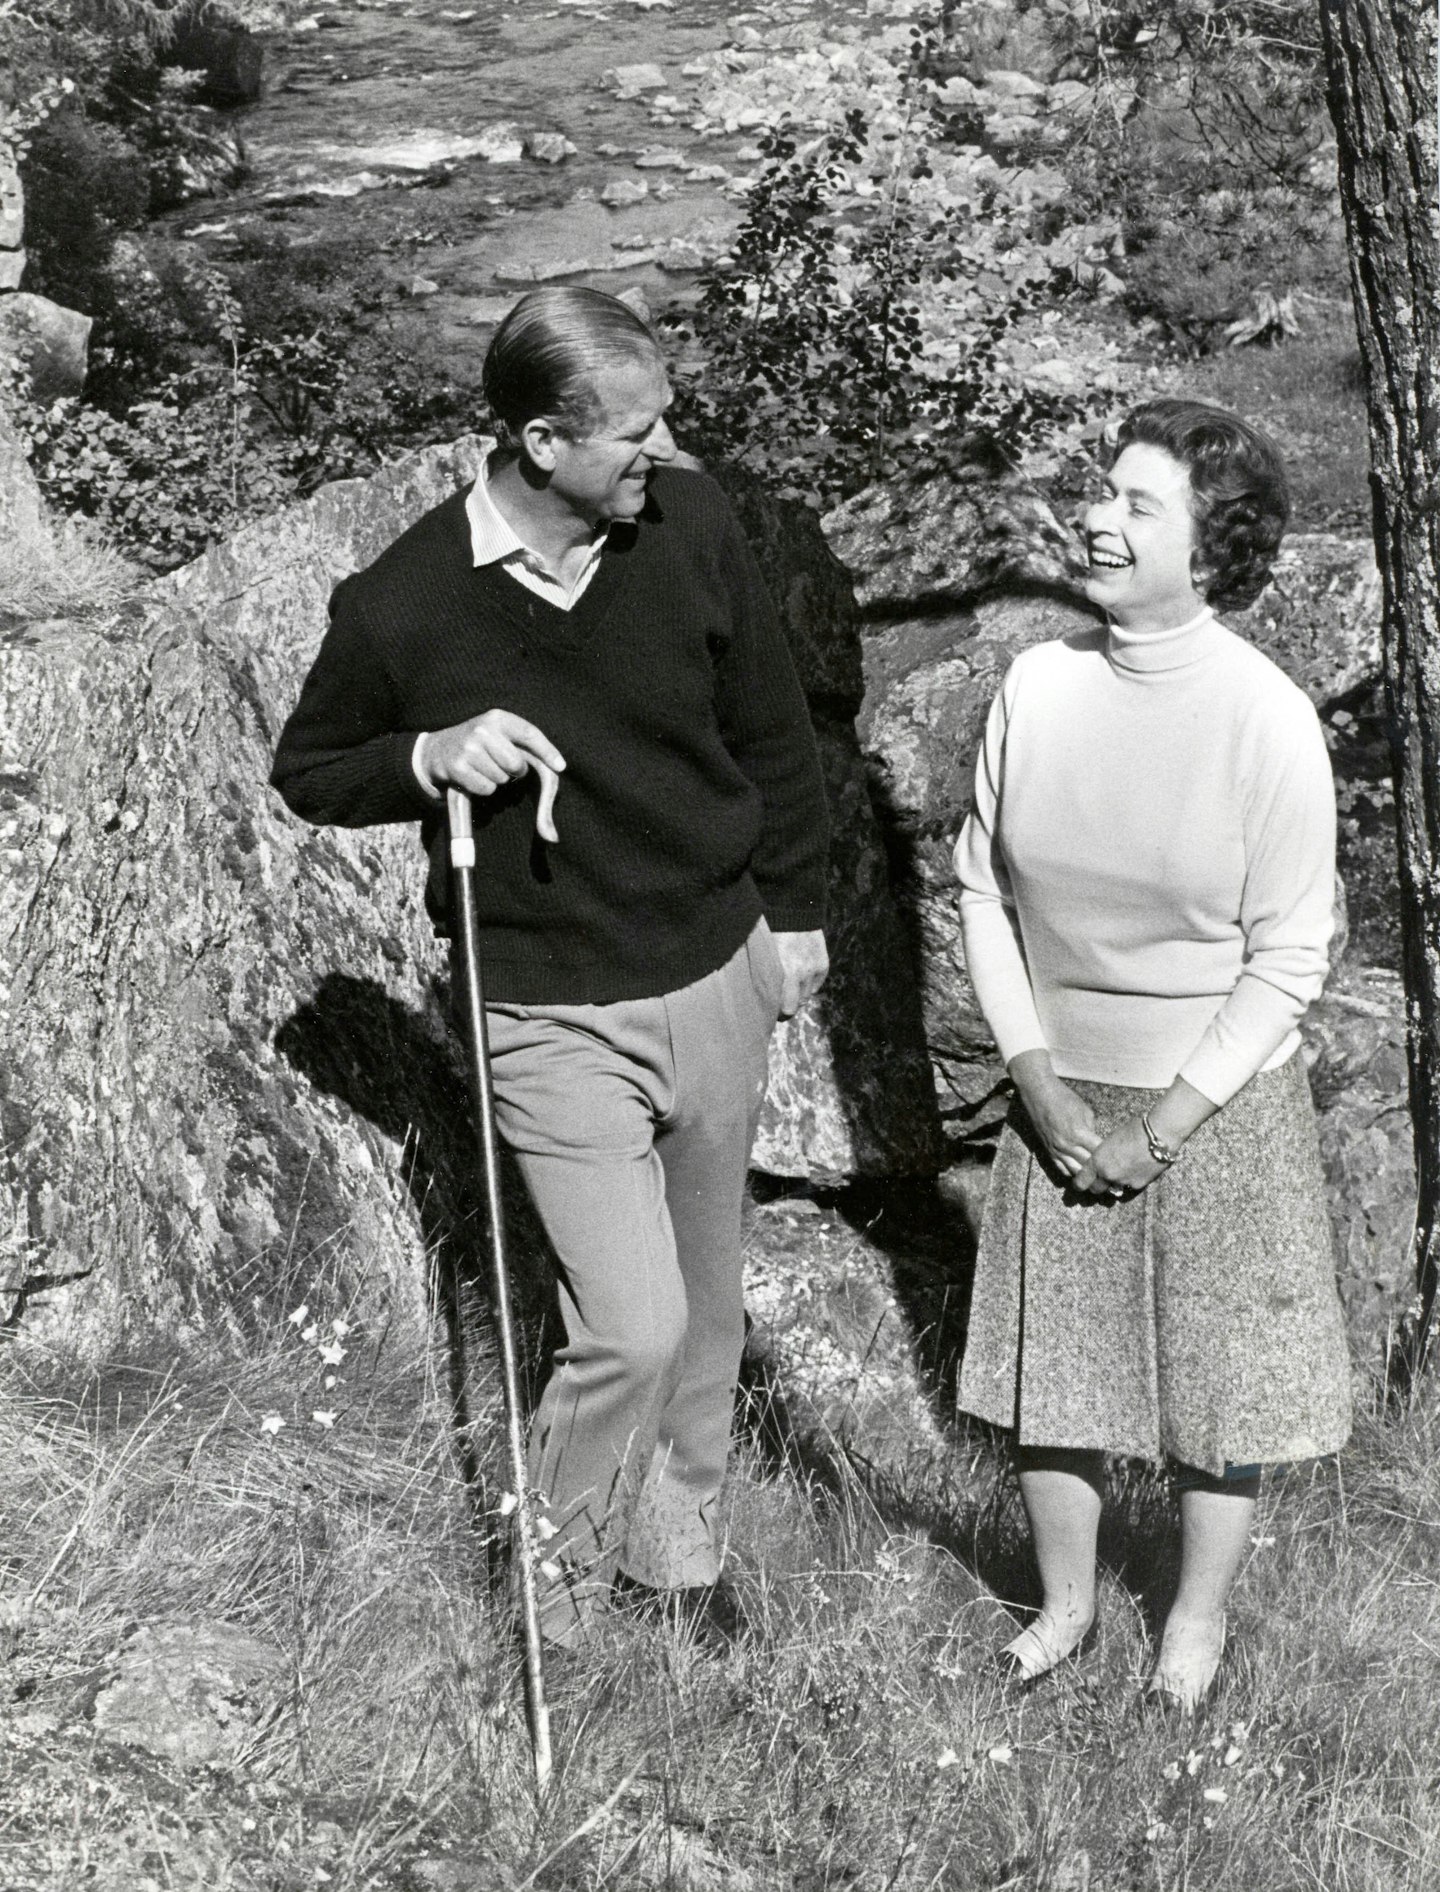 Queen Elizabeth II with her husband Prince Philip walking